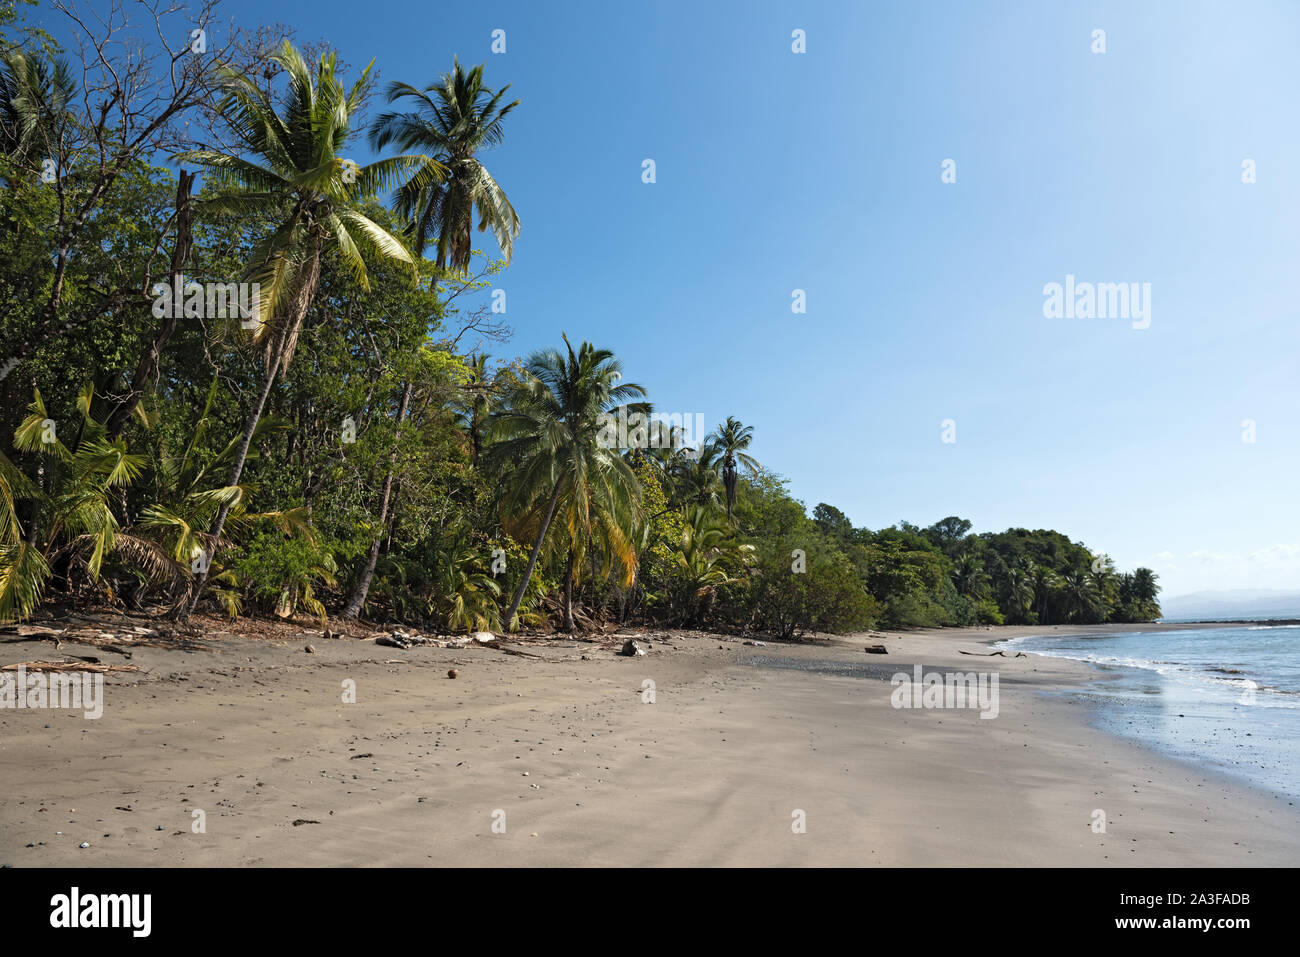 Hermosa playa de arena de la isla cebaco Panamá Foto de stock